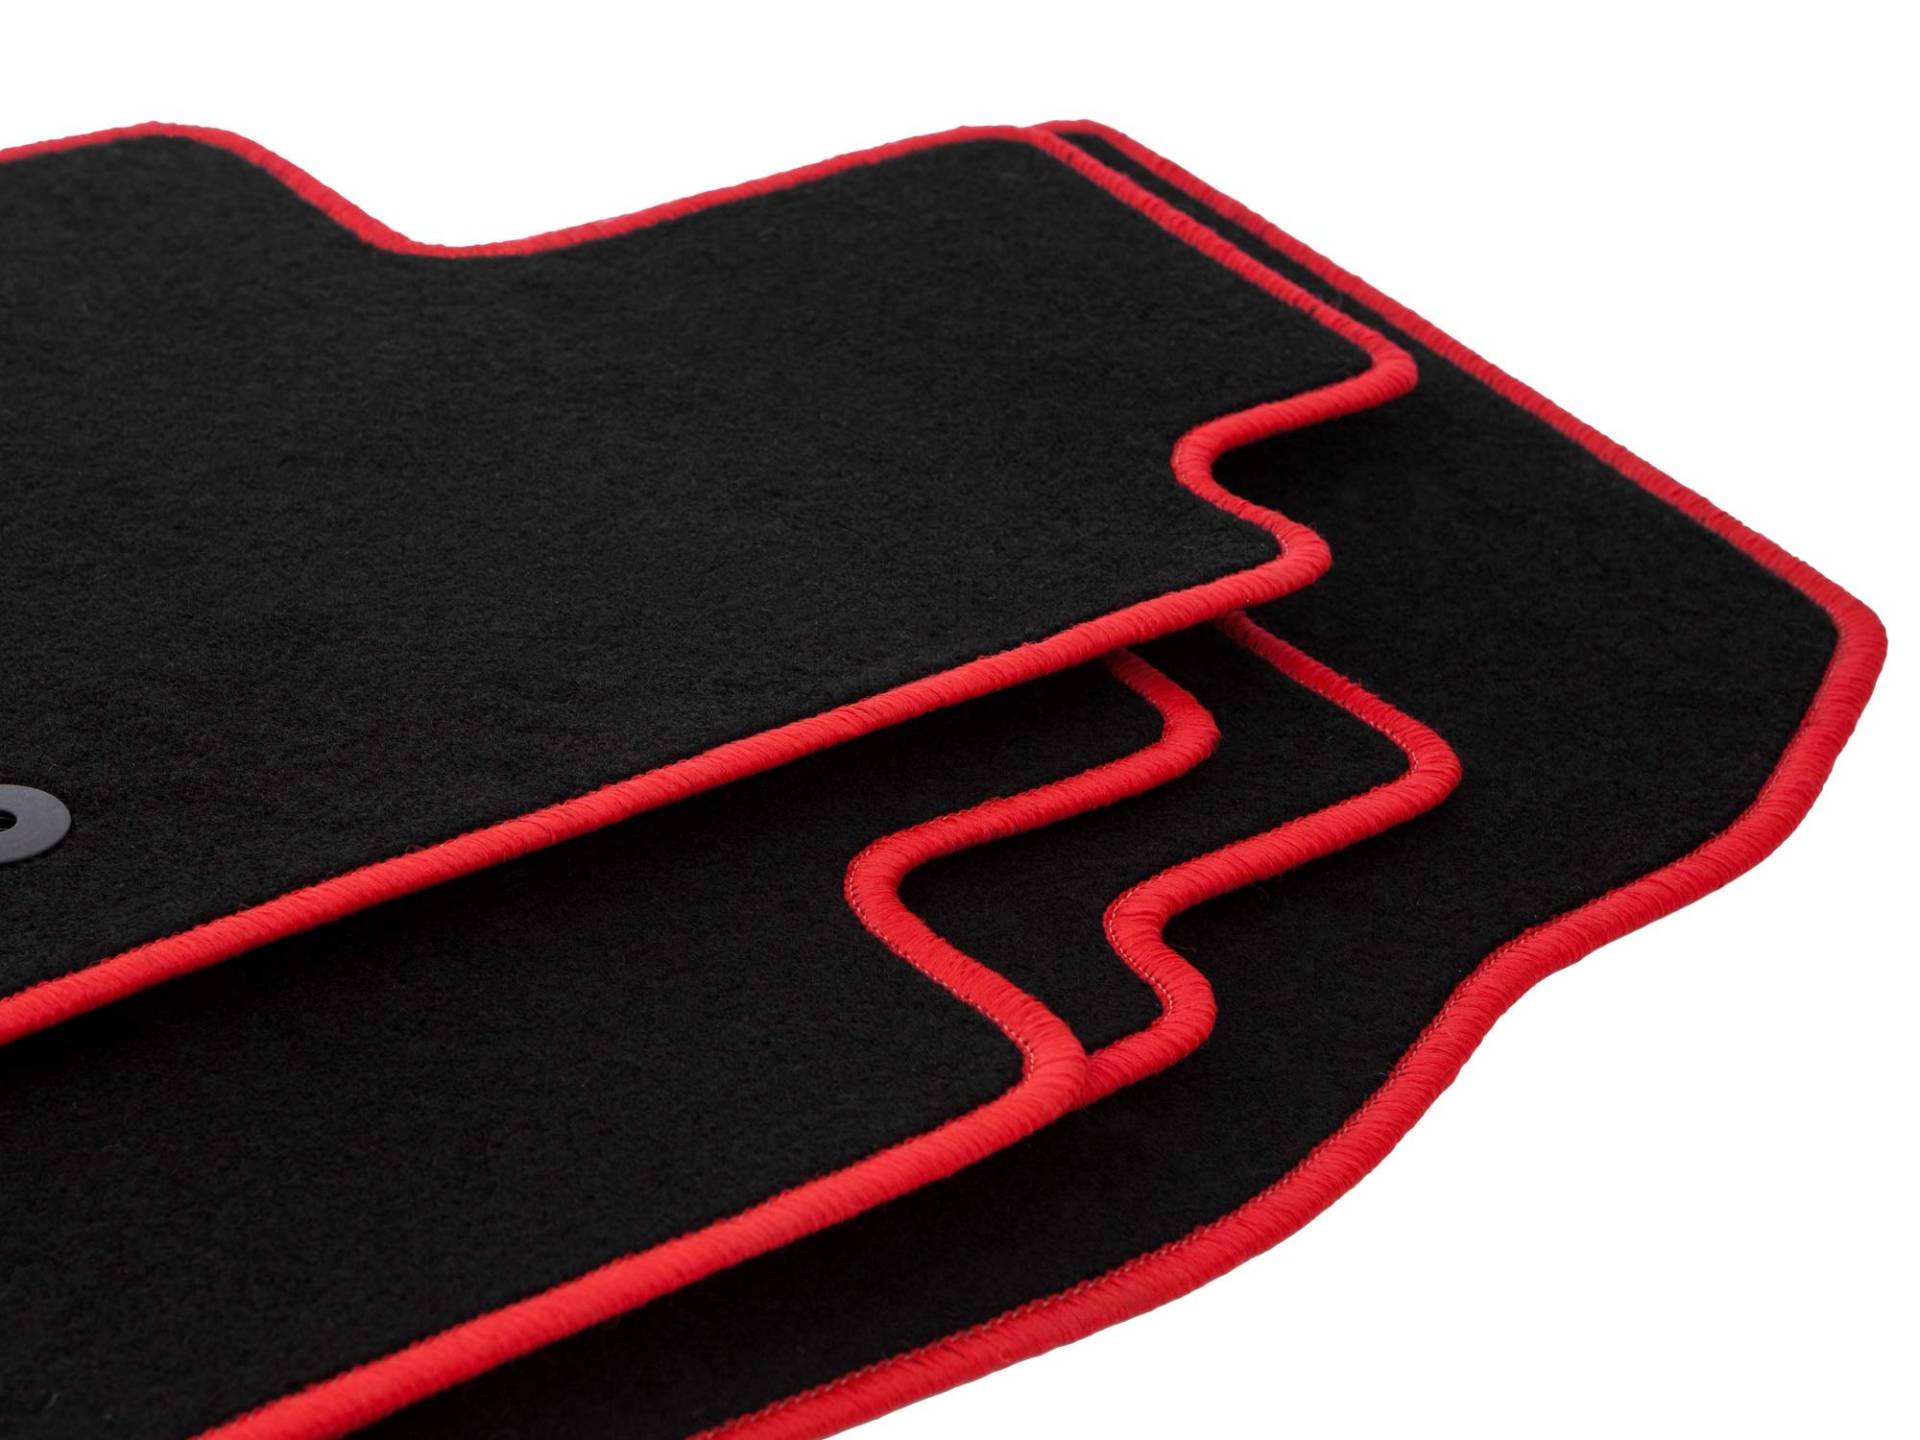 Wielganizator schwarz rot Fußmatten Velours Satz passend für: Chevrolet Camaro V (2006-2015) Autofußmatten-Set Velours Autoteppiche 4-teilig Autoteppiche Nadelfilz Matten passgenau von Wielganizator